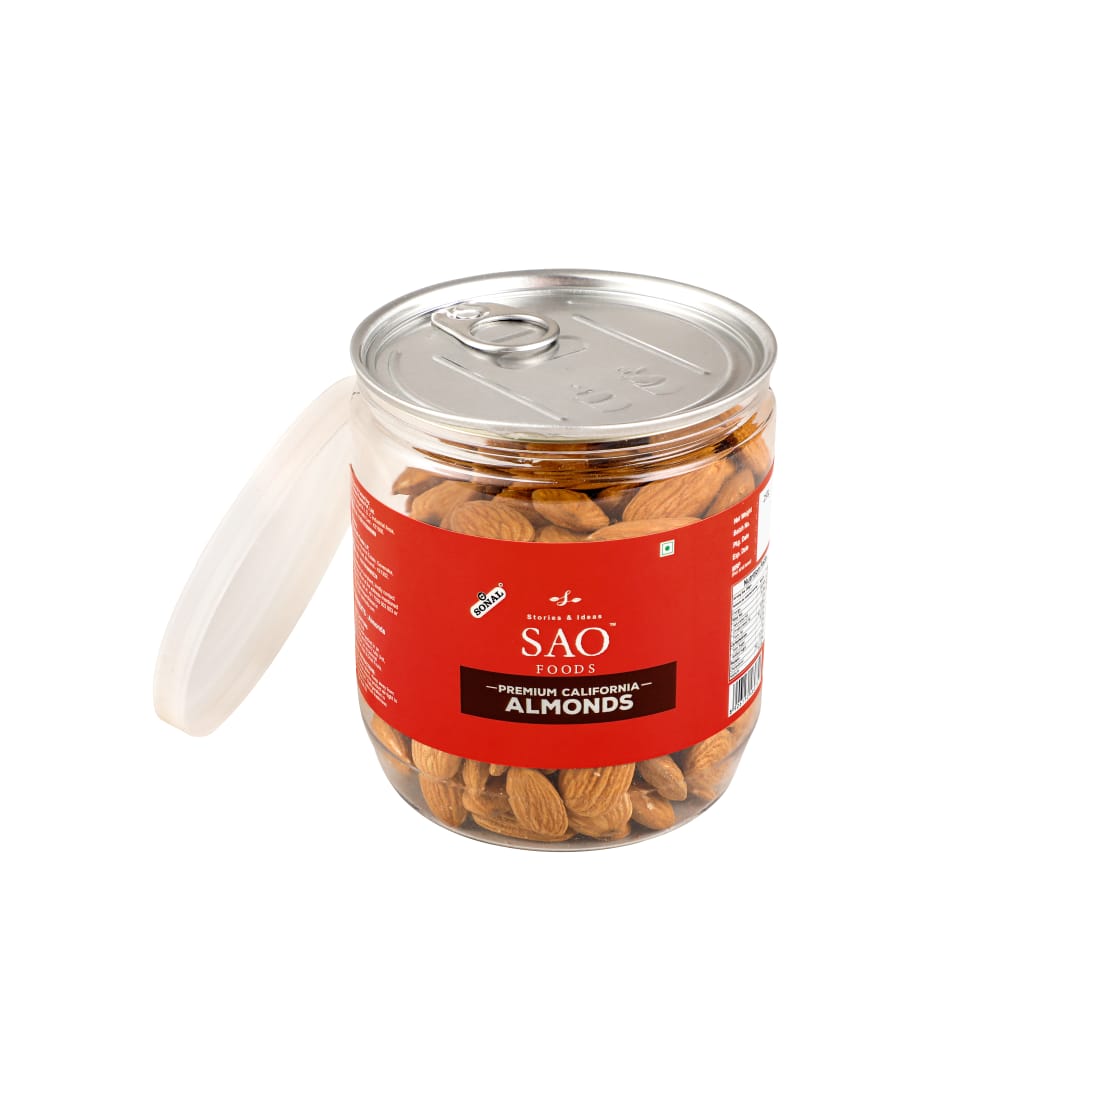 SAO FOODS Roasted & Unsalted Premium California Almonds 250 gm | Jumbo Size | PET Jar with Tin cap